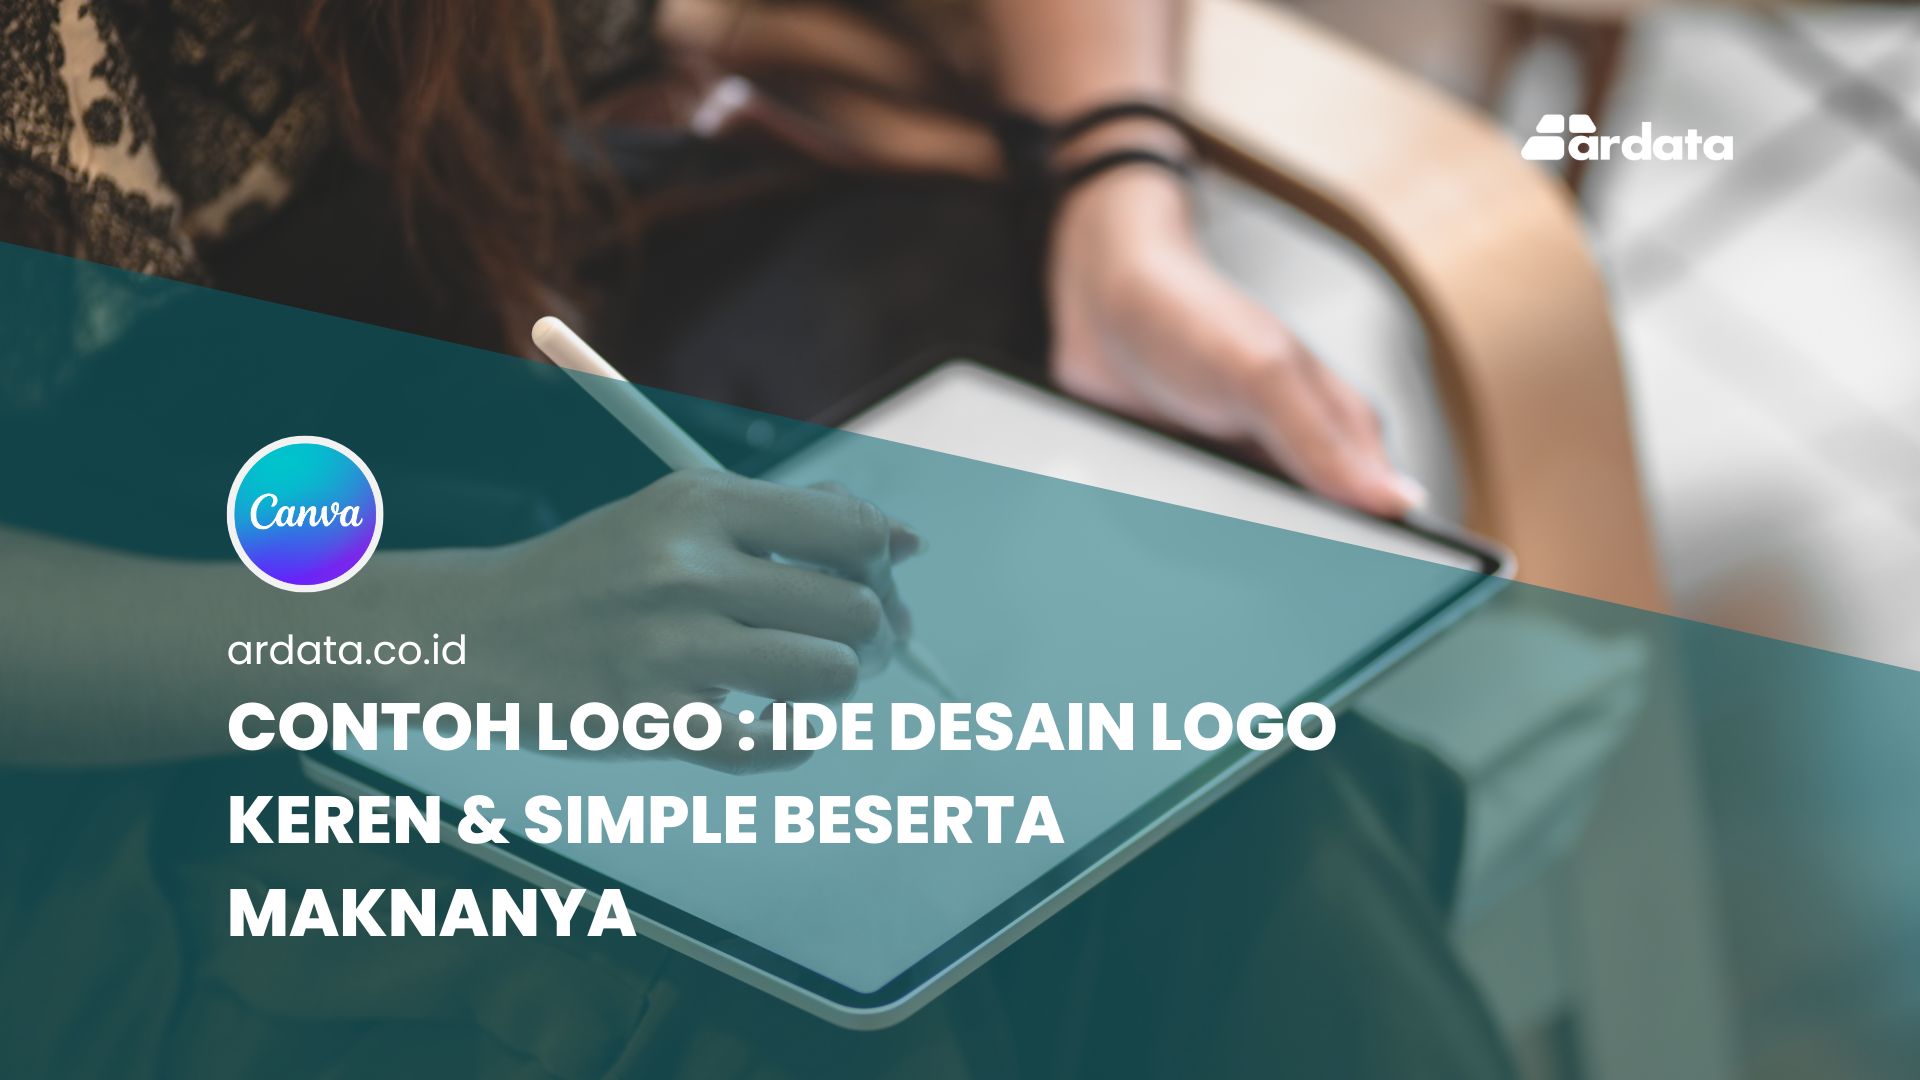 Contoh Logo : Ide Desain Logo Keren & Simple Beserta Maknanya